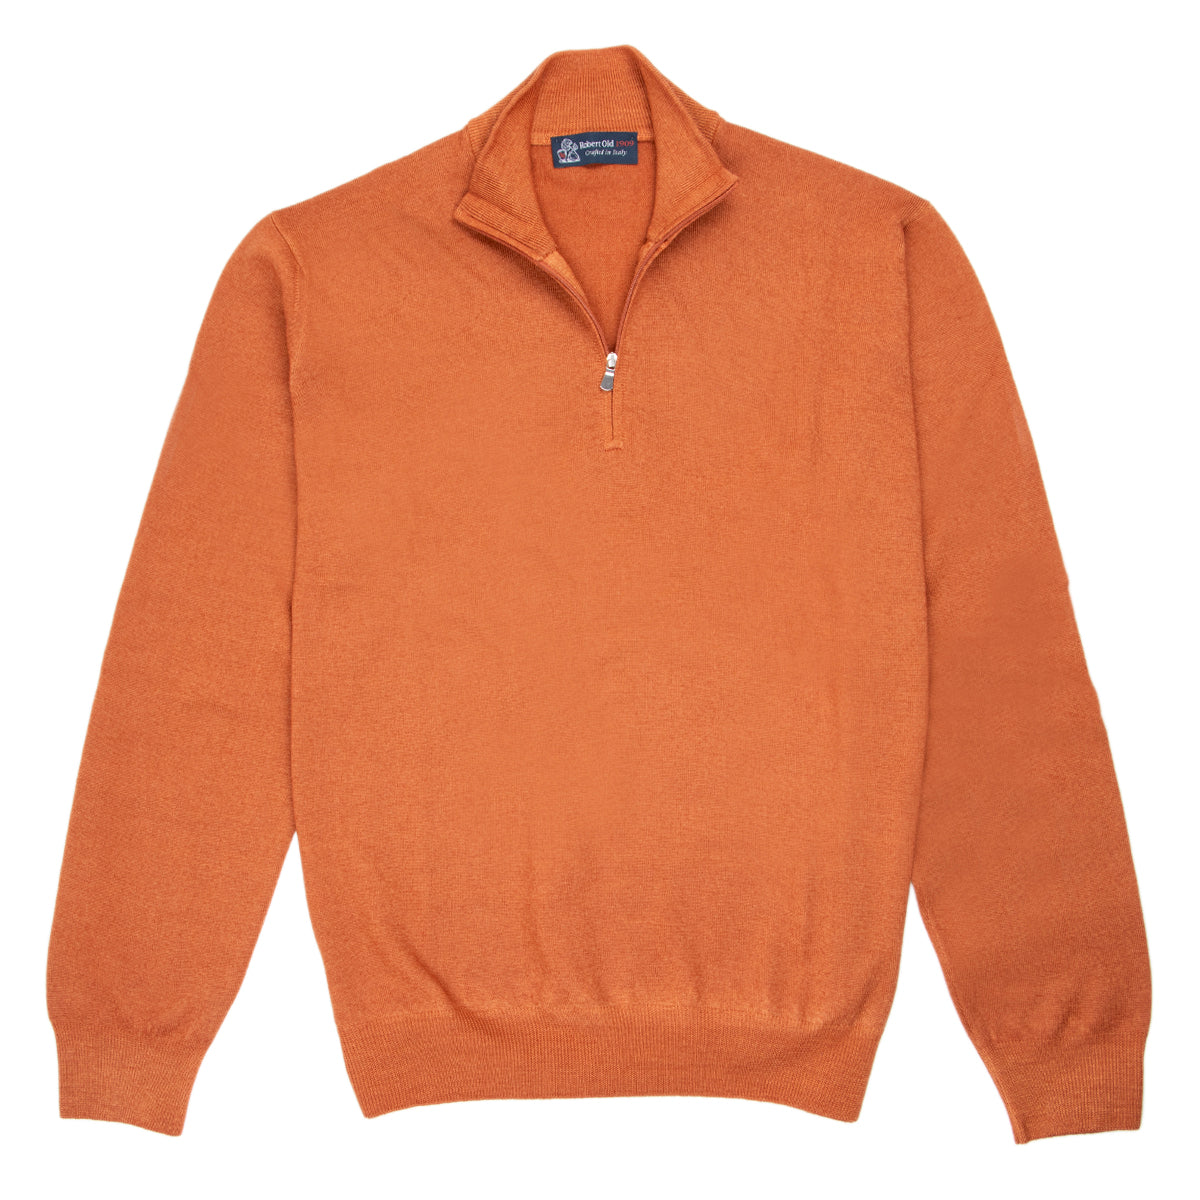 Orange Virgin Wool Zip Neck Sweater  Robert Old   